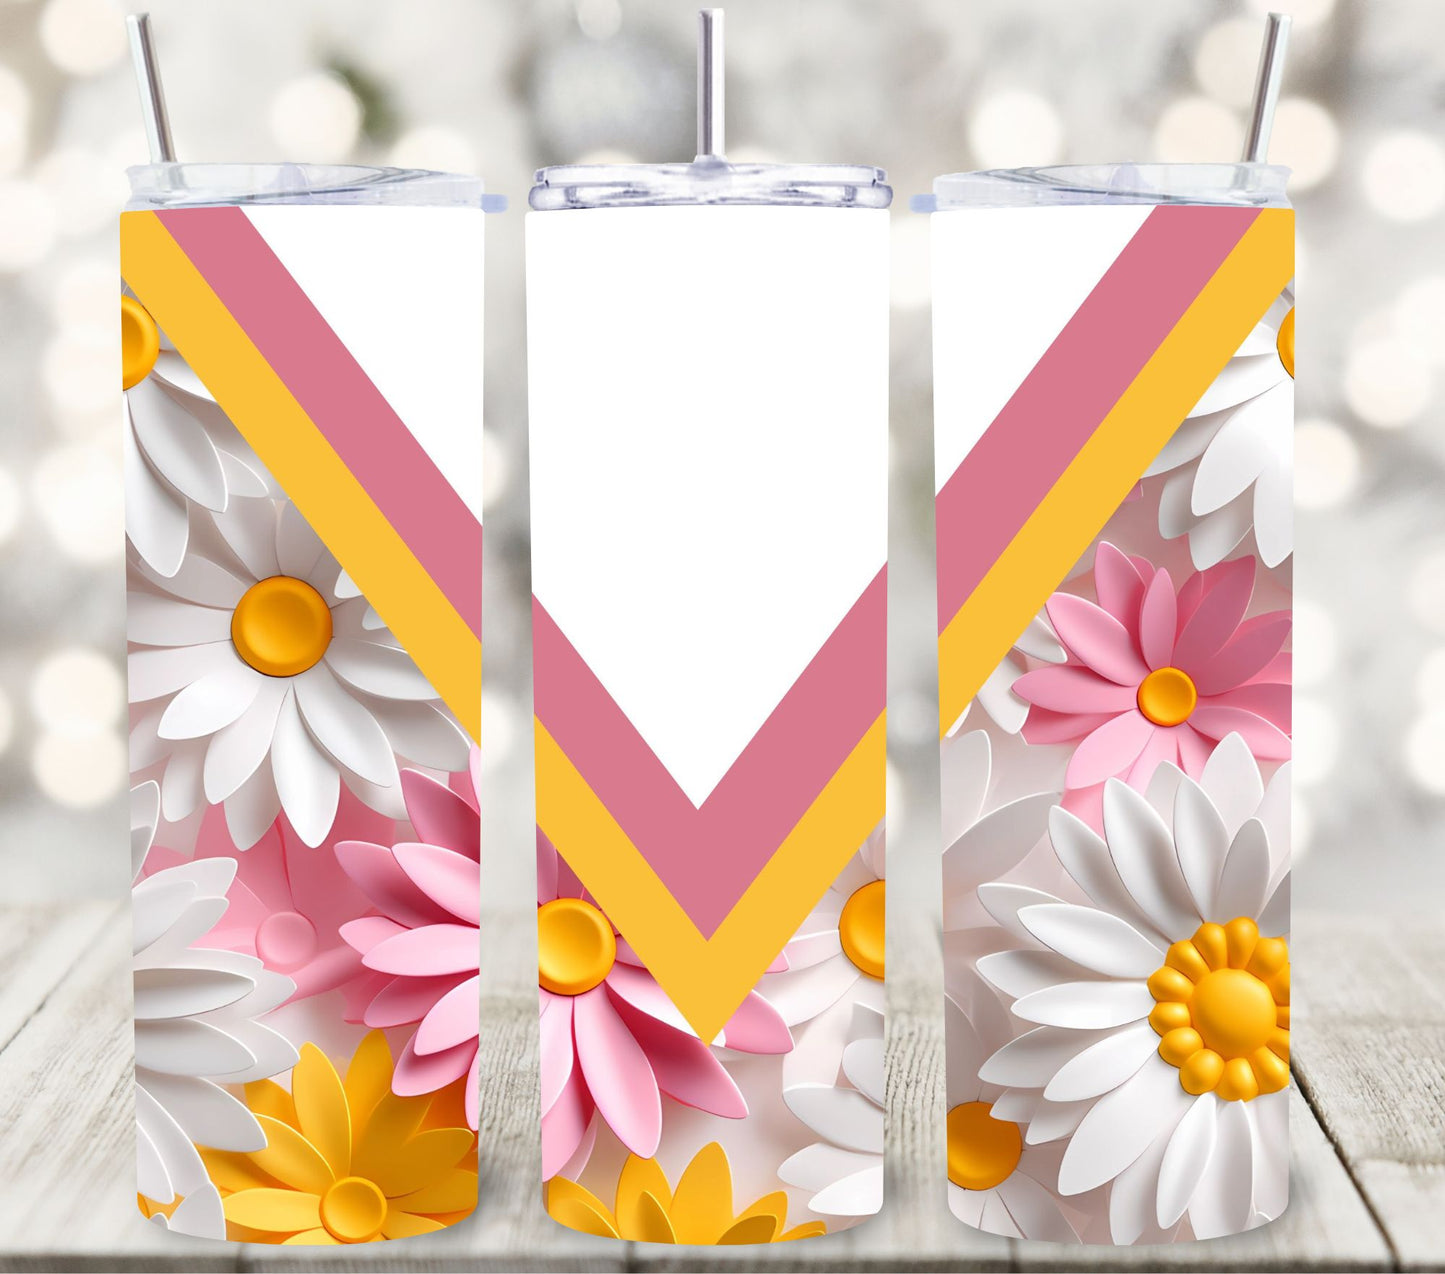 VSplit Beautiful 3D floral wraps- 8 Designs